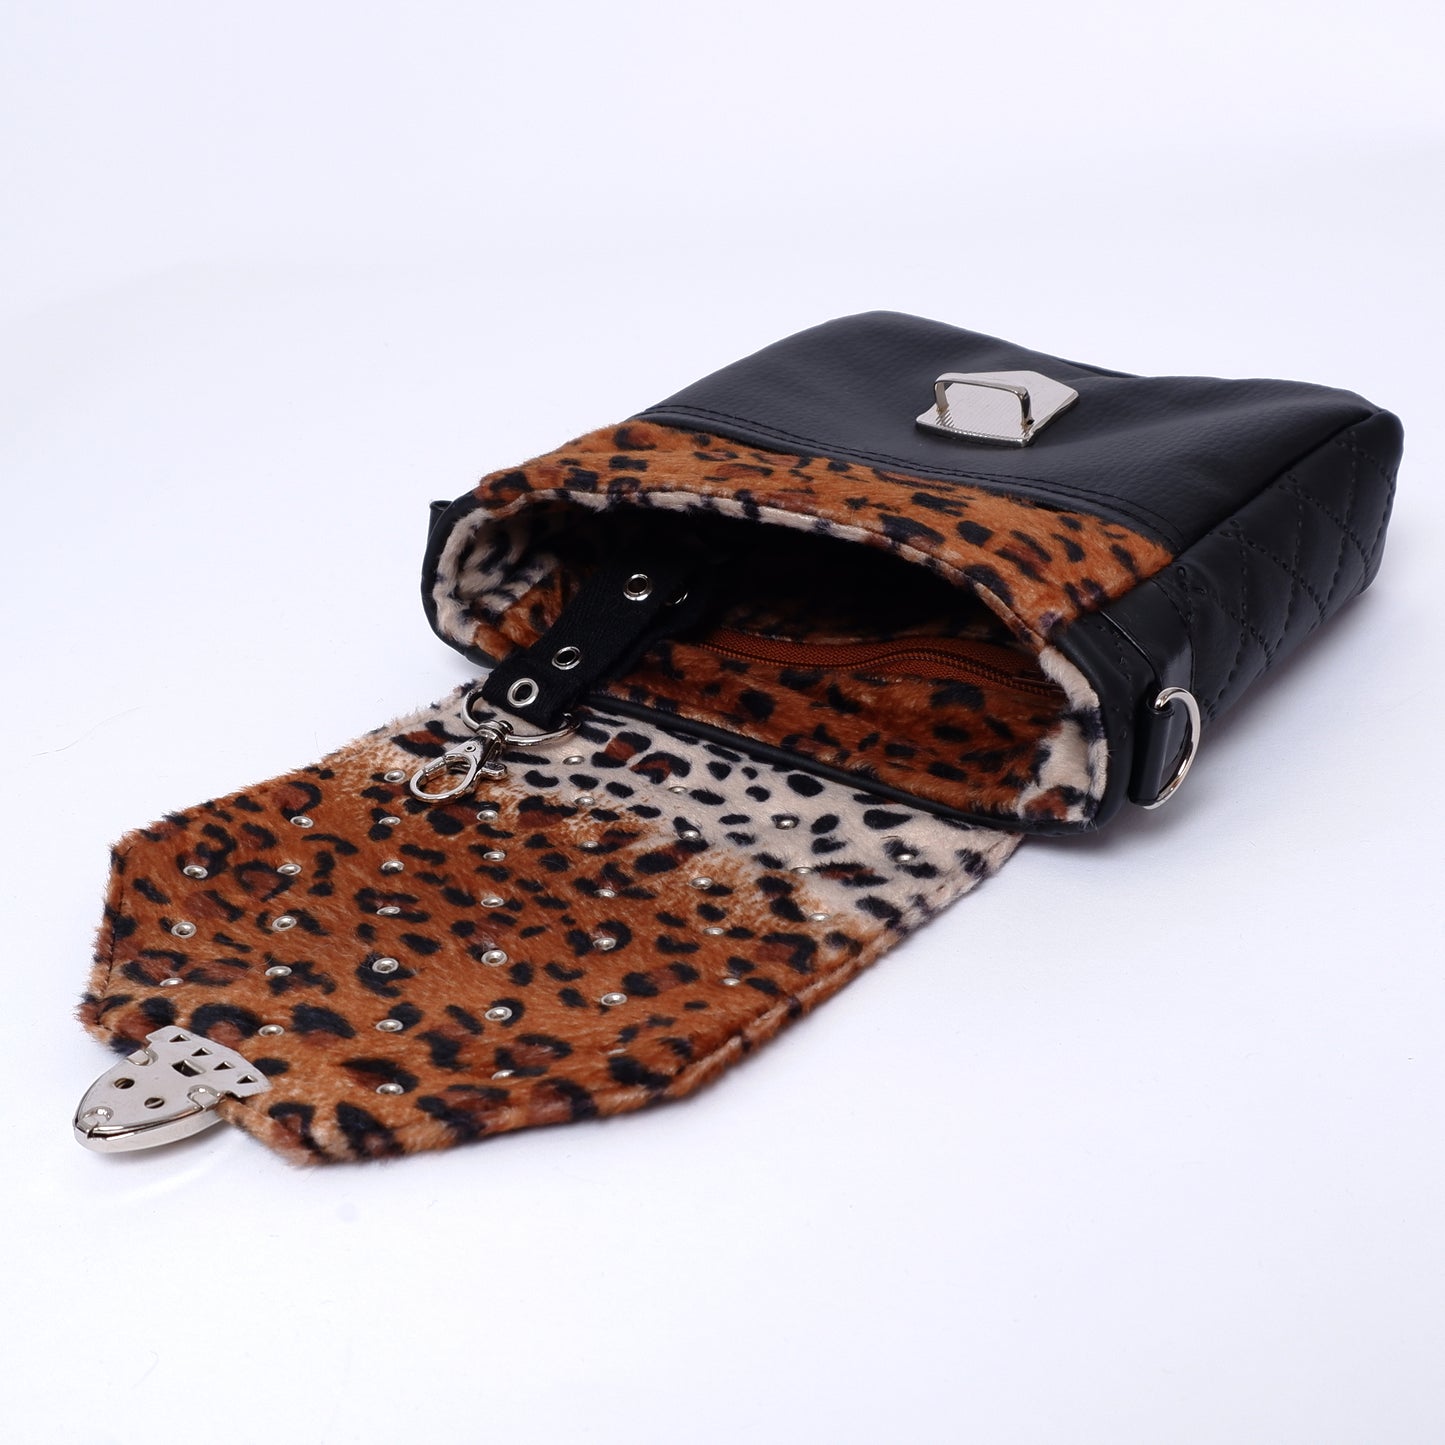 2- Wege Tasche Glam Cheetah